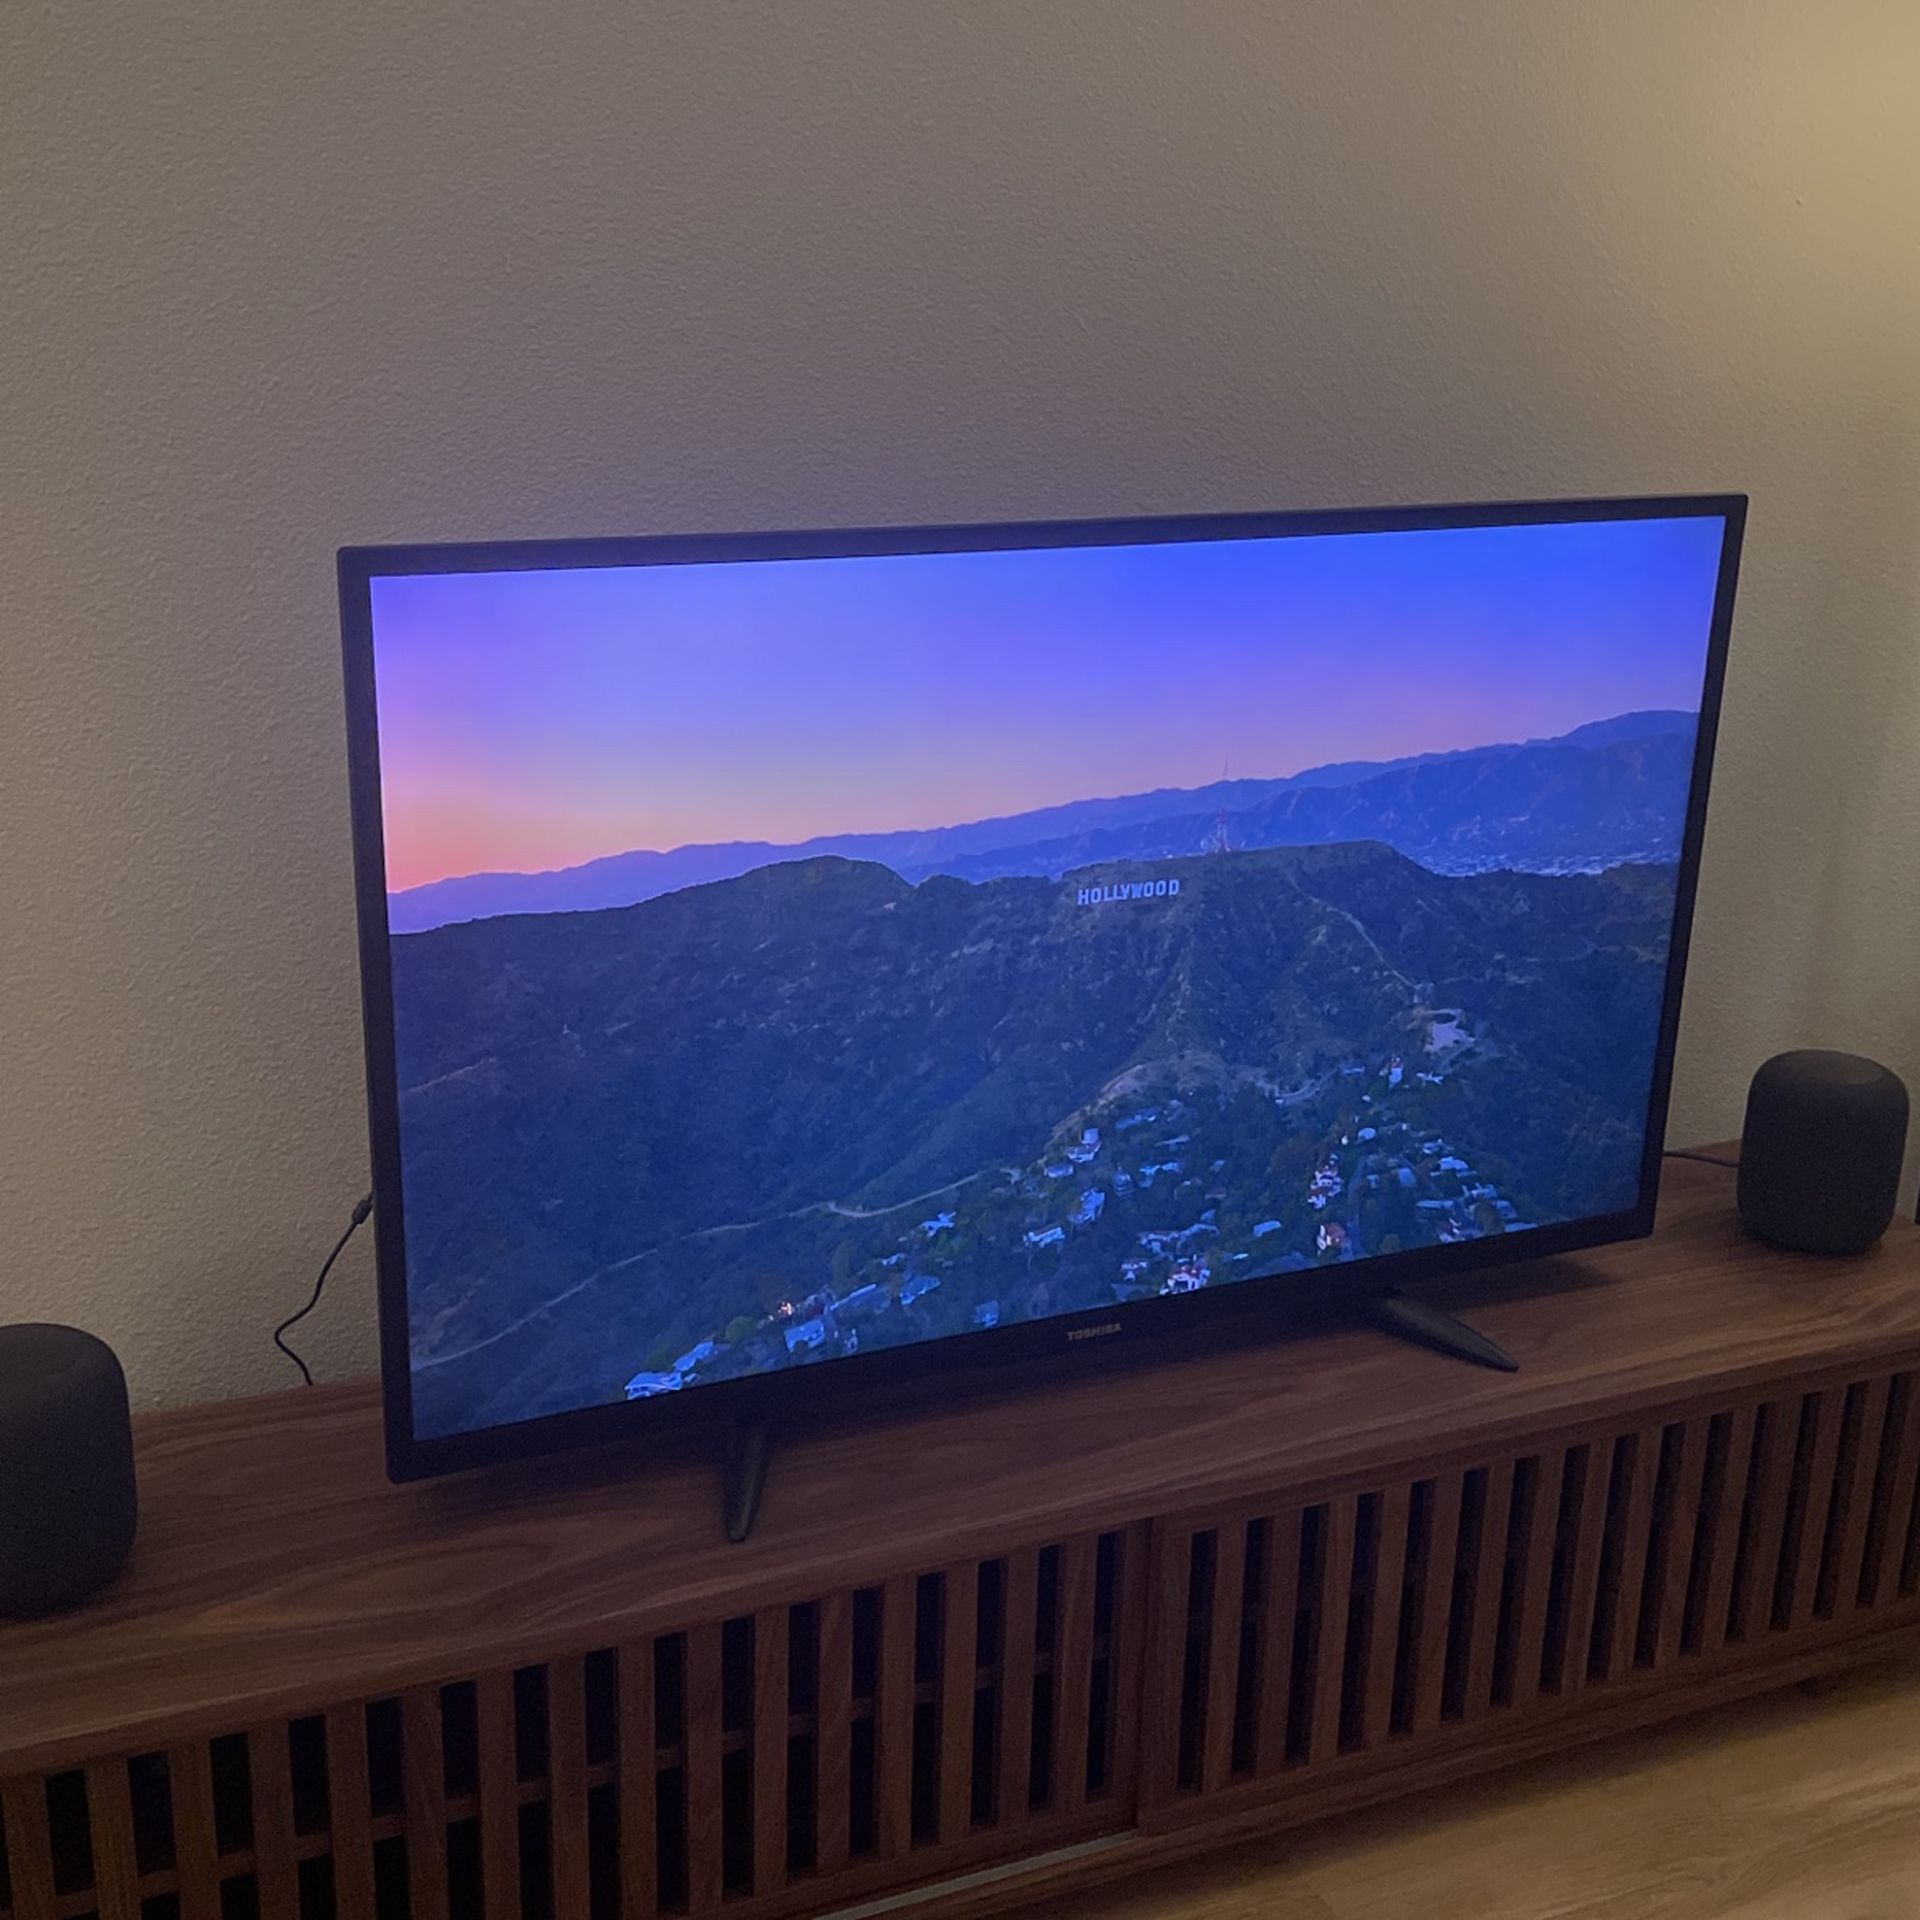 Toshiba 4K HDR Amazon Fire TV With Alexa